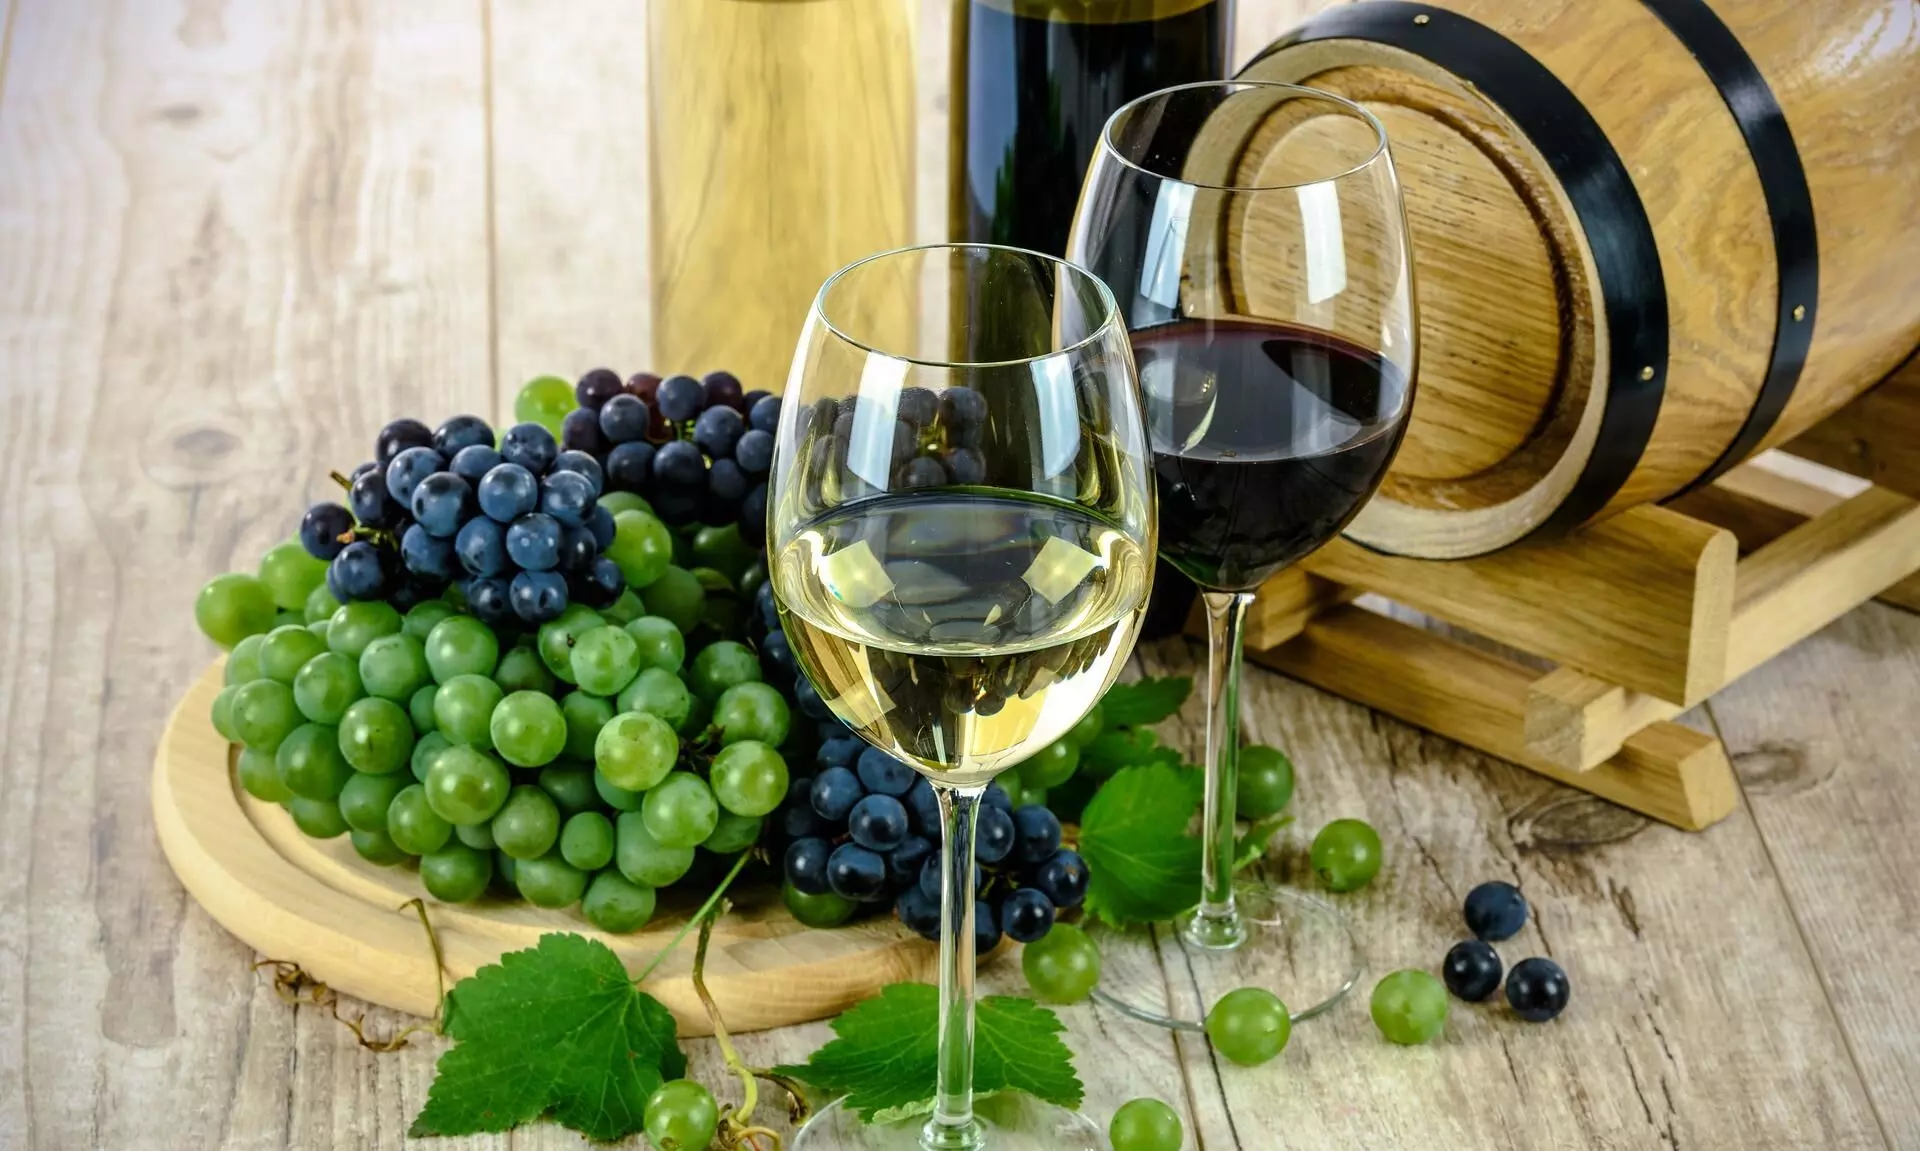 द्राक्ष बागायतदारांच्या फायद्यासाठी सरकार देणार वाईन उद्योगास प्रोत्साहन